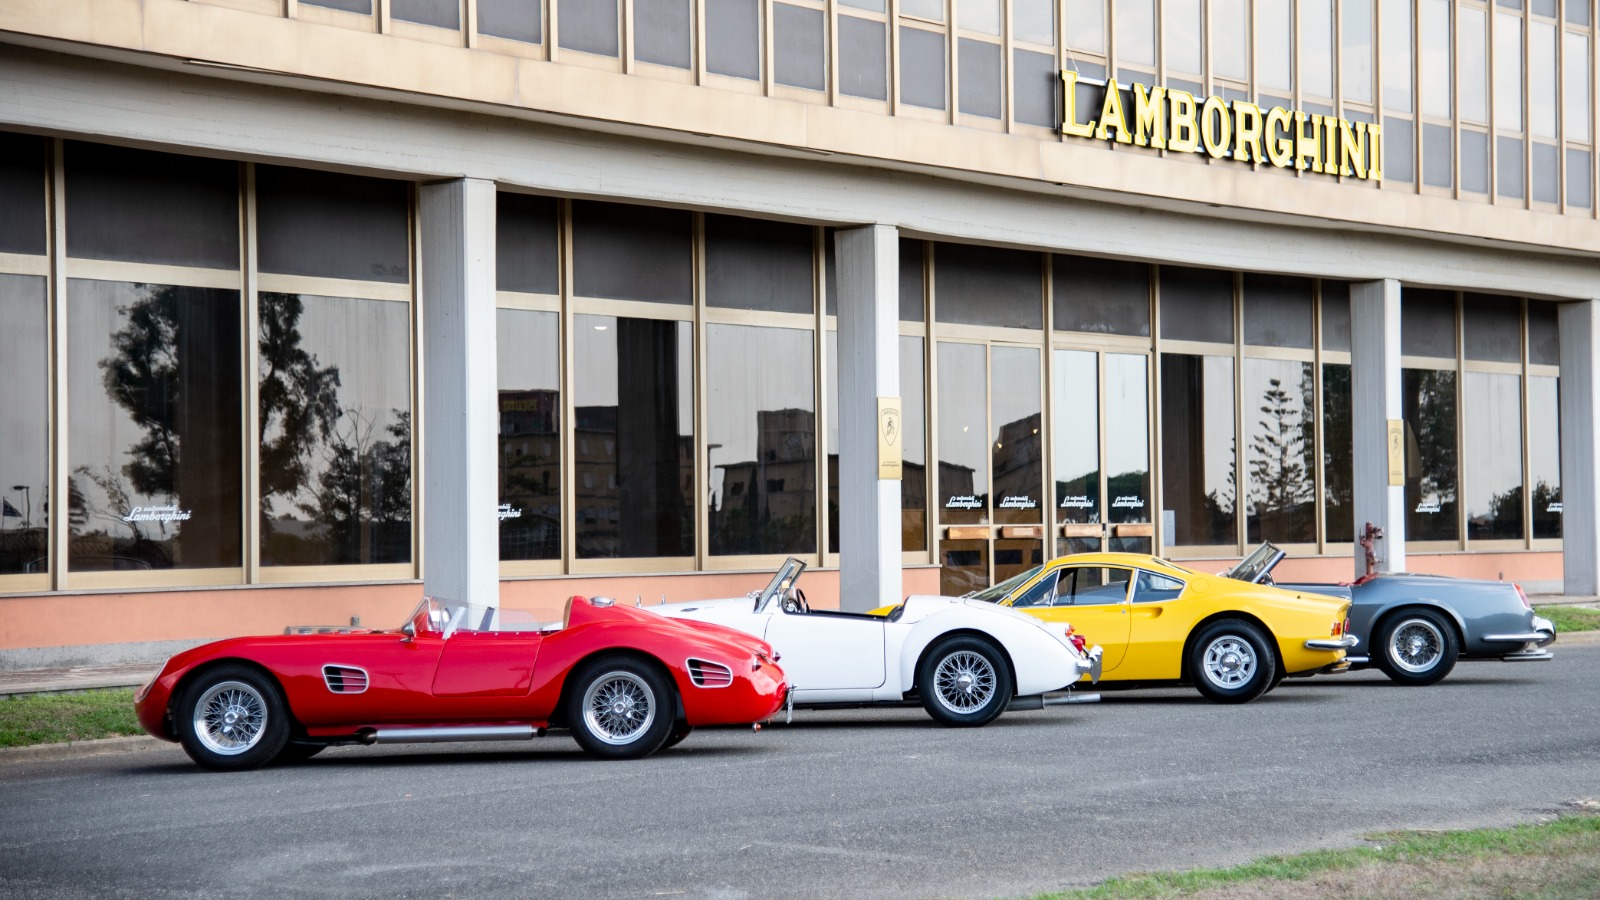 Gli esterni dello stabilimento Lamborghini (credits: Lambofilm/Zian Films/Grindstone Entertainment Group/Iervolino & Lady Bacardi Entertainment/Lionsgate)